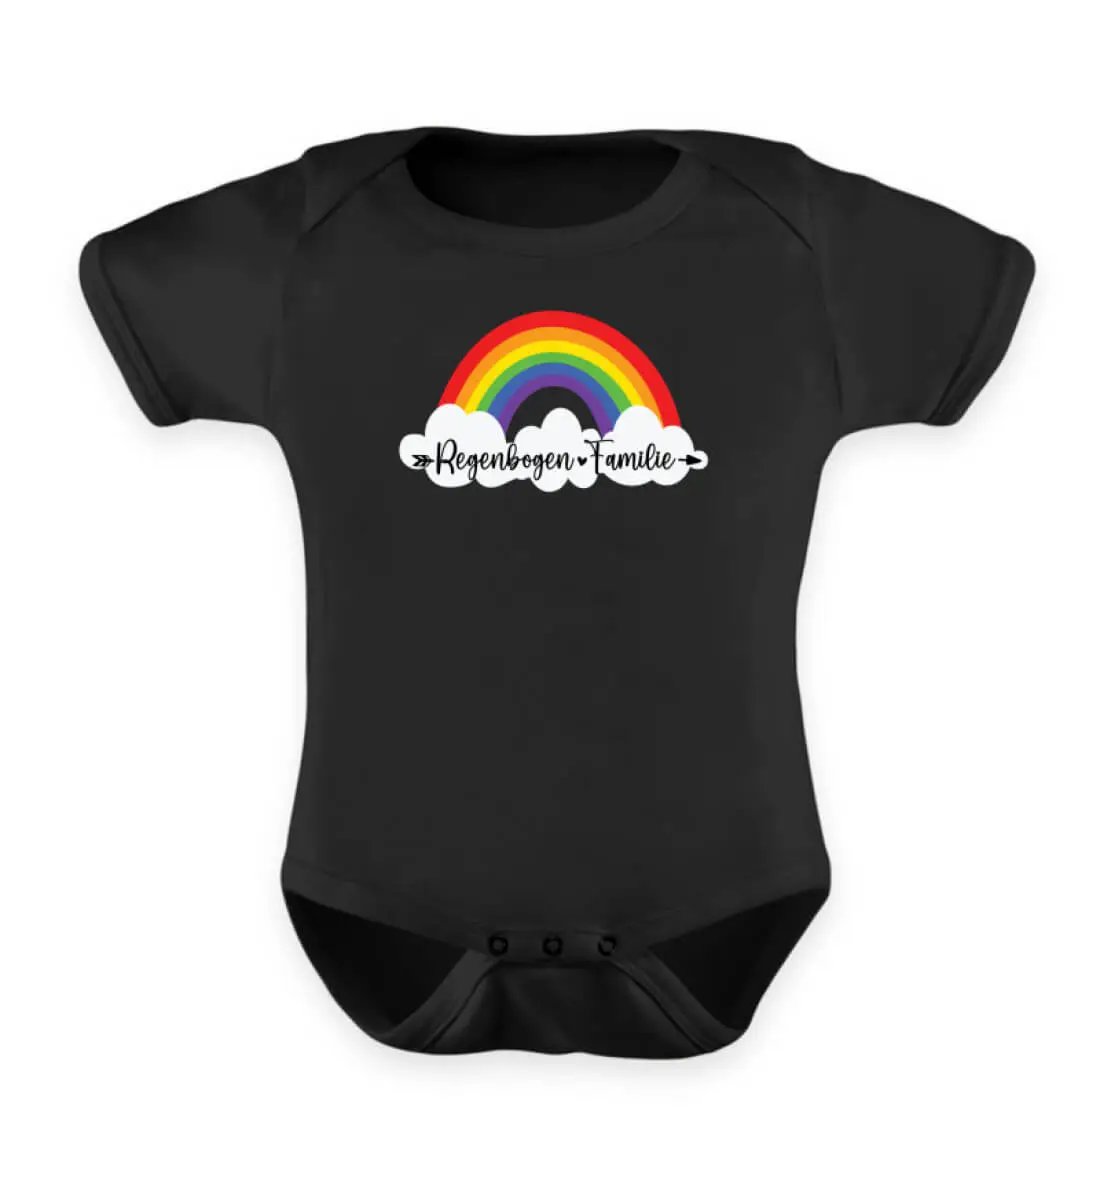 Dieses Bild zeigt einen schwarzen Baby Body mit einem Regenbogen Motiv wo drauf steht Regenbogen Familie